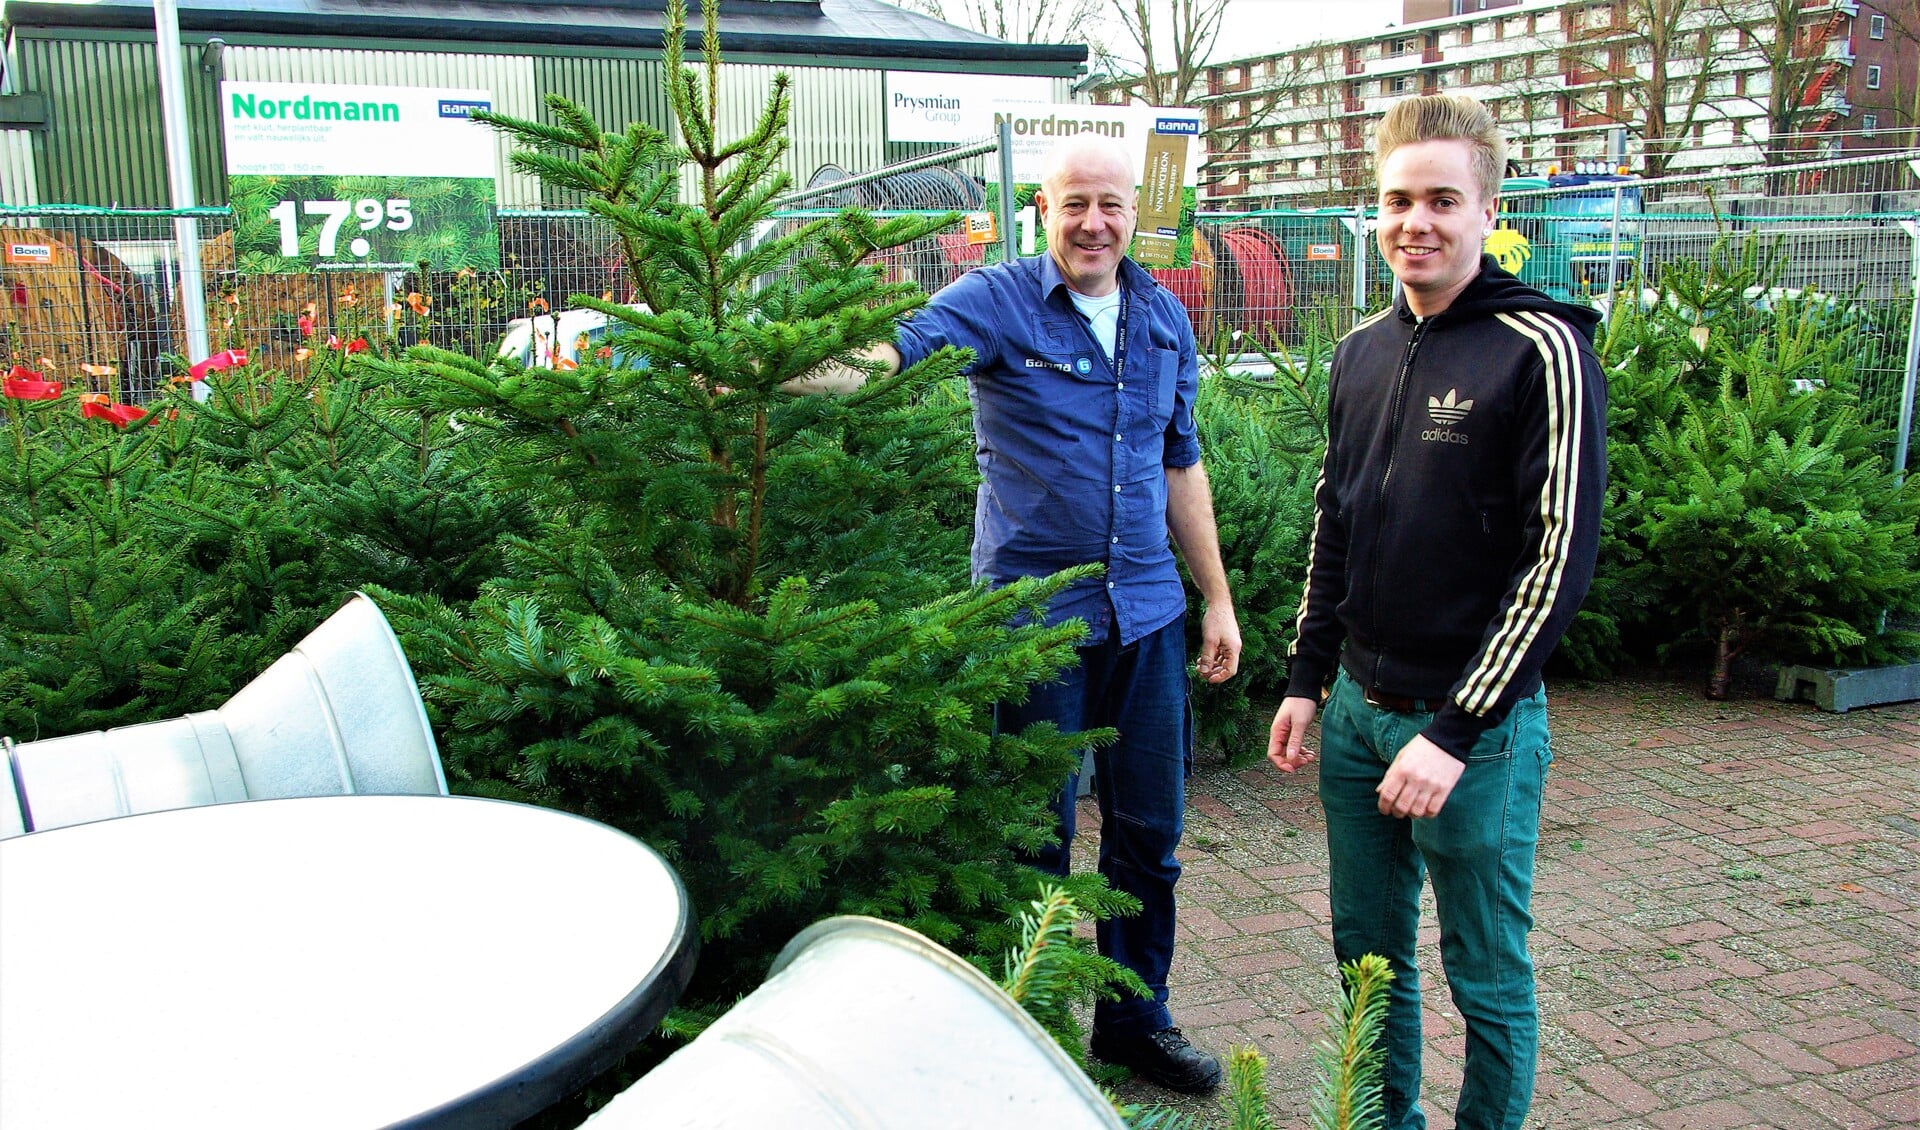 Allan Zuiderwijk en Jeffrey van Gamma Delft zijn er klaar voor. De verkoop van kerstbomen is begonnen. 